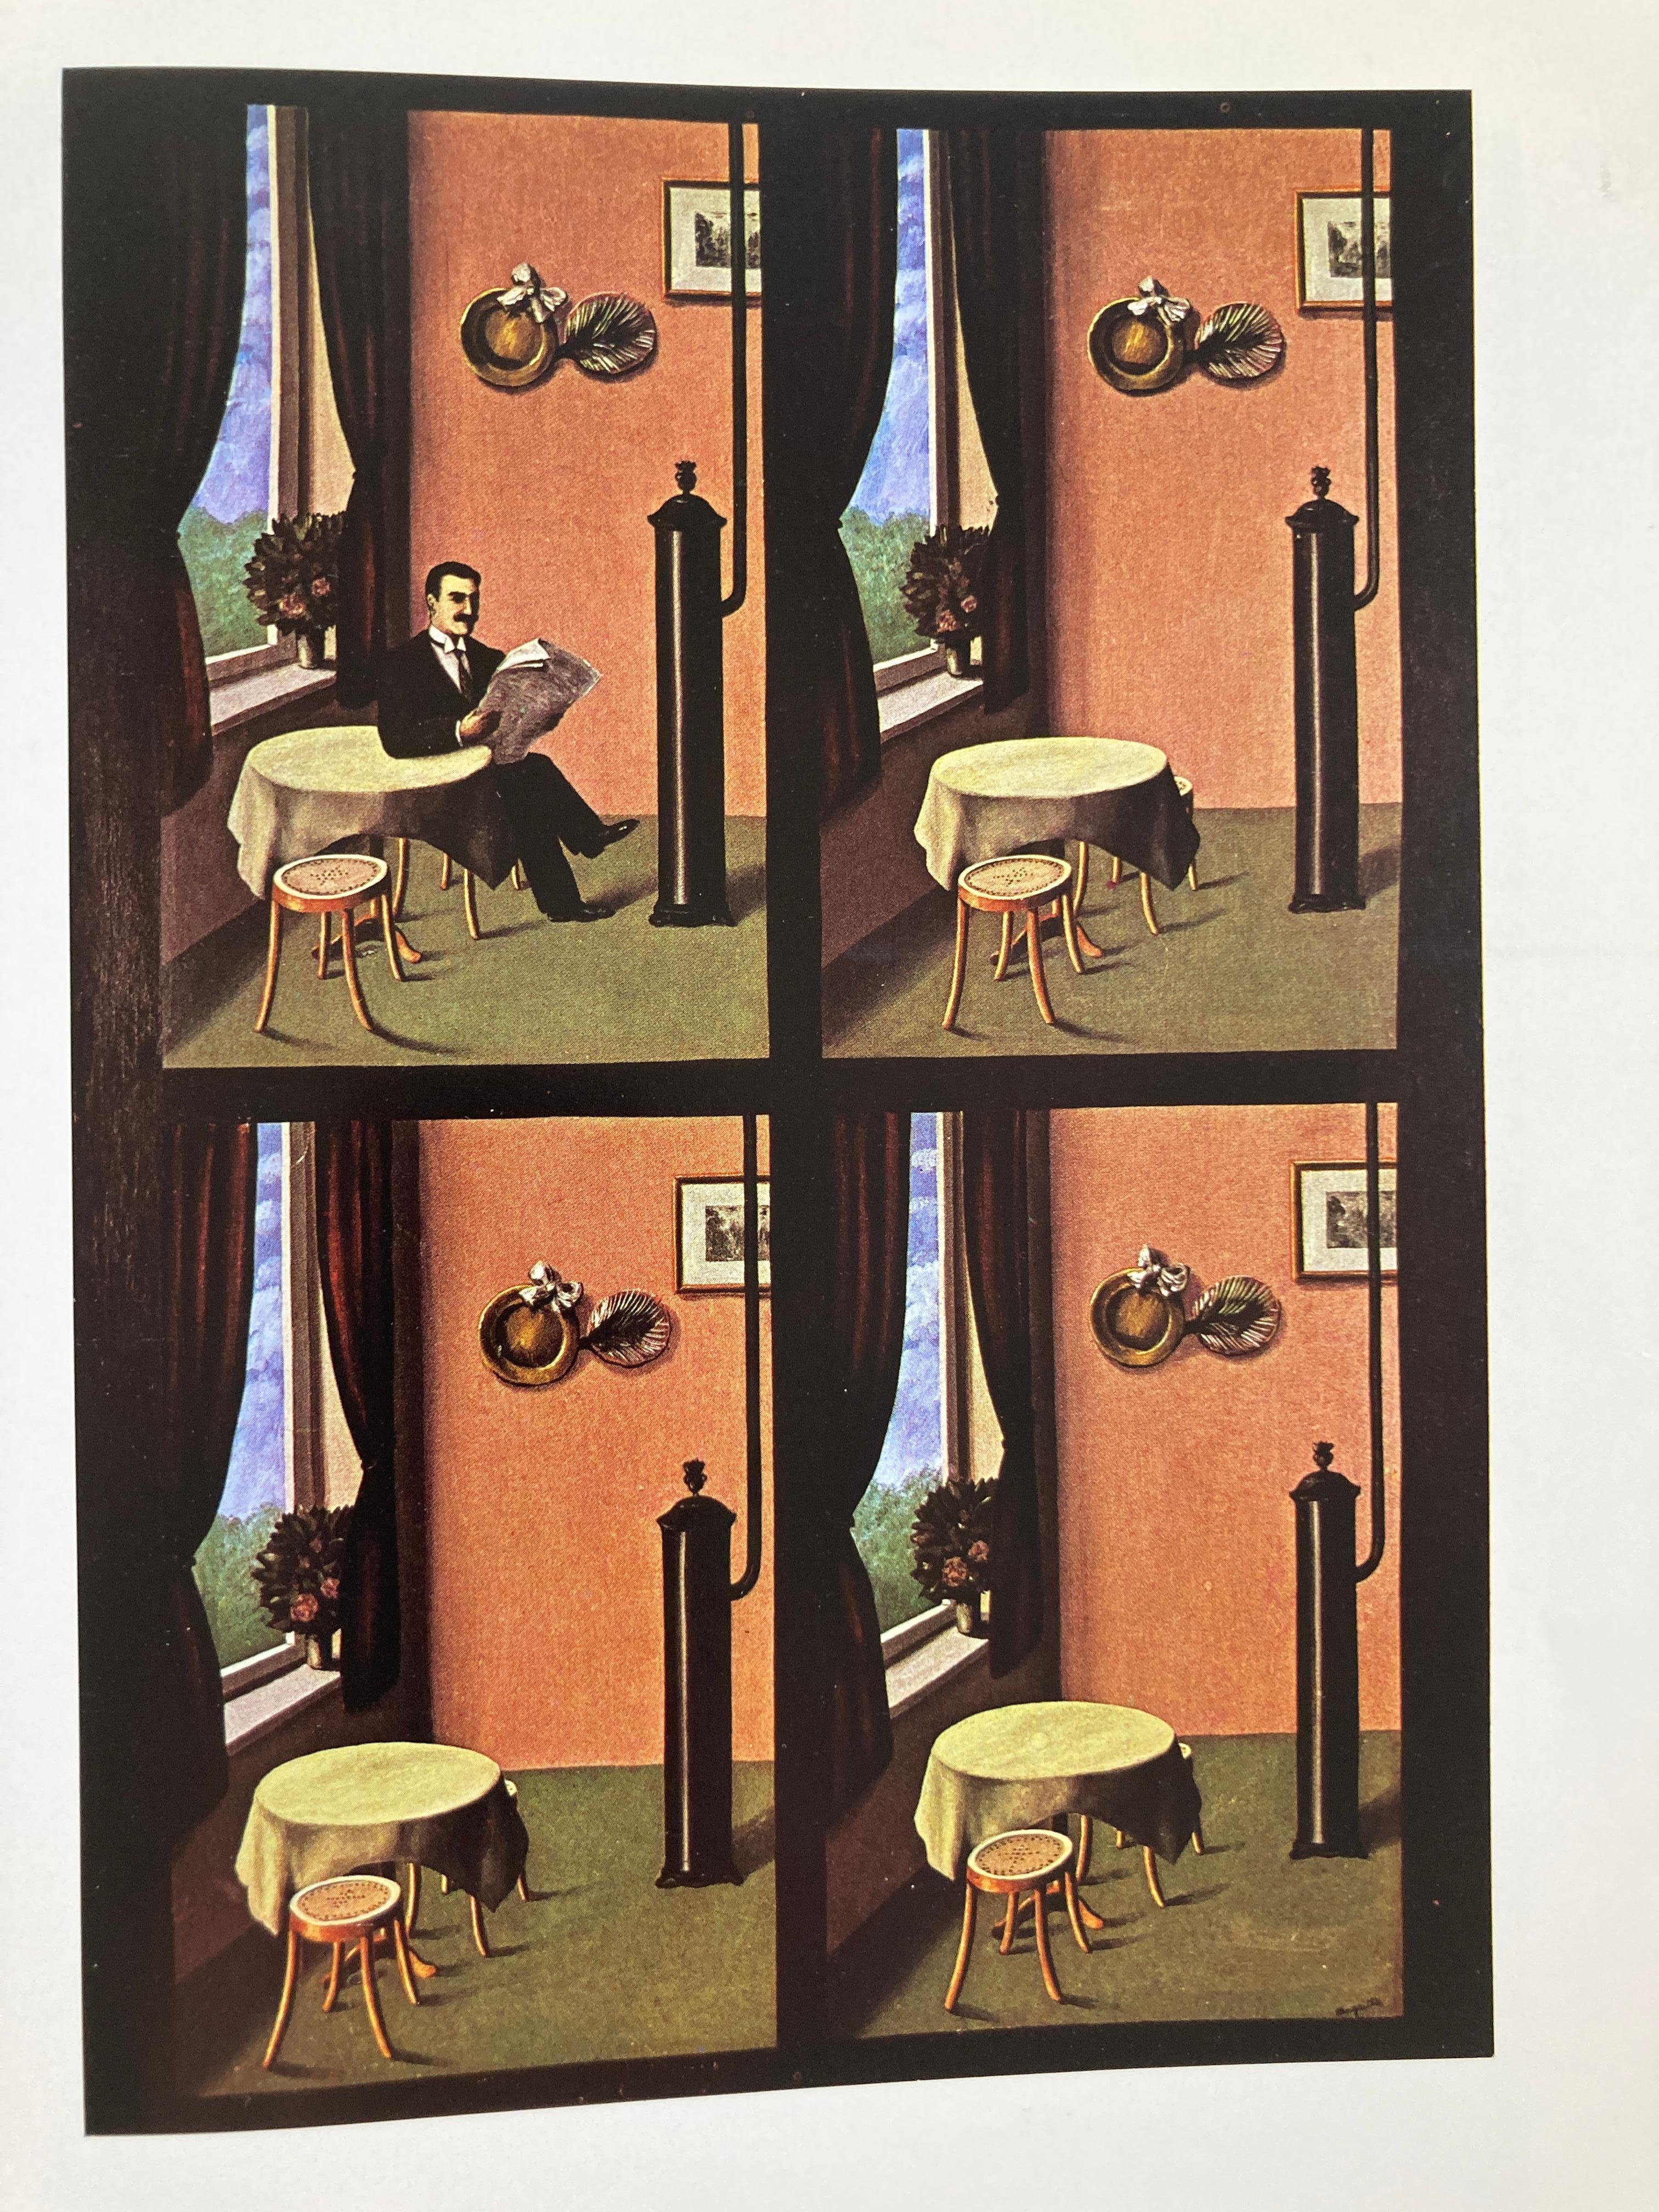 Paper Magritte Larkin, David Published by Ballantine, 1973